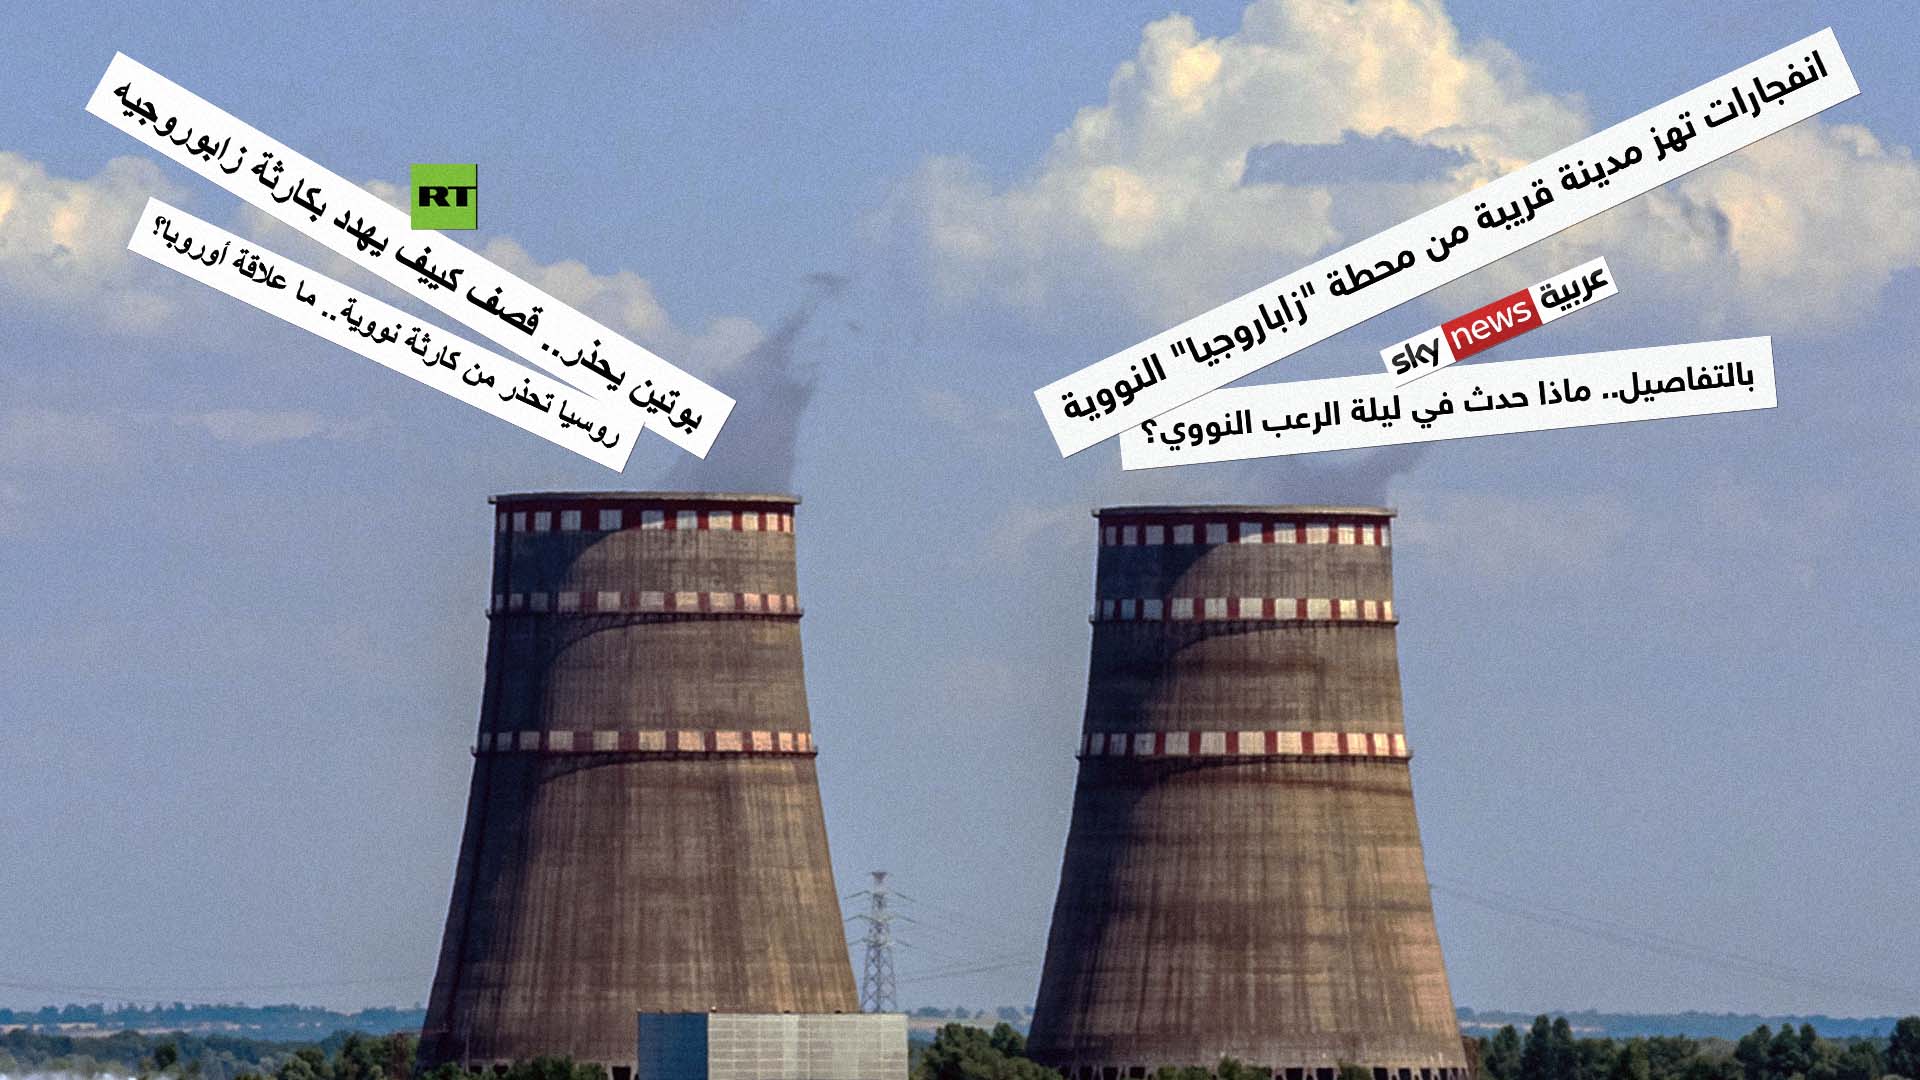 صورة روسيا اليوم وسكاي نيوز تنصبان راجمات اتهامات حول محطة زاباروجيا النووية